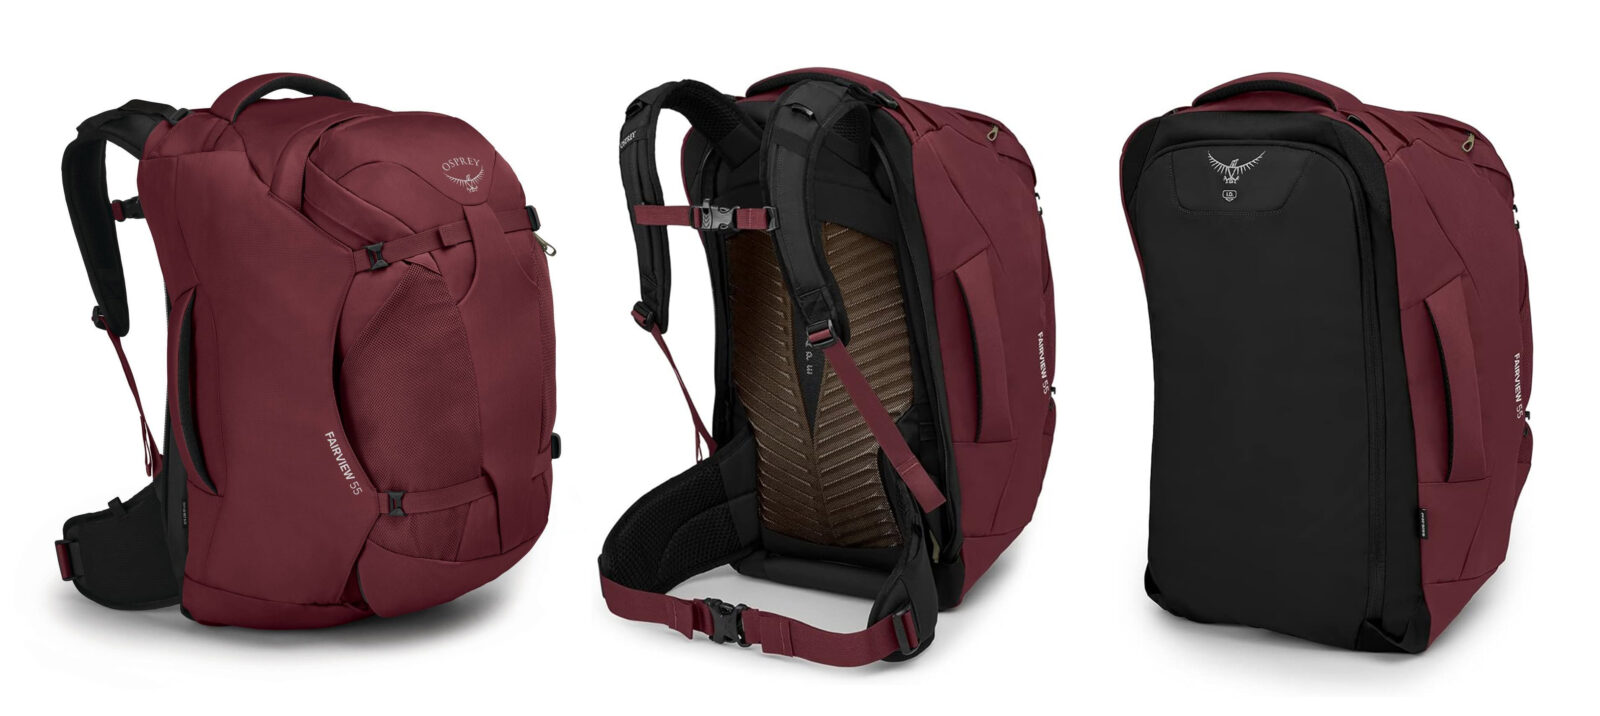 Sac à dos ou valise ? Plus besoin de choisir, Osprey propose un sac polyvalent et hybride !